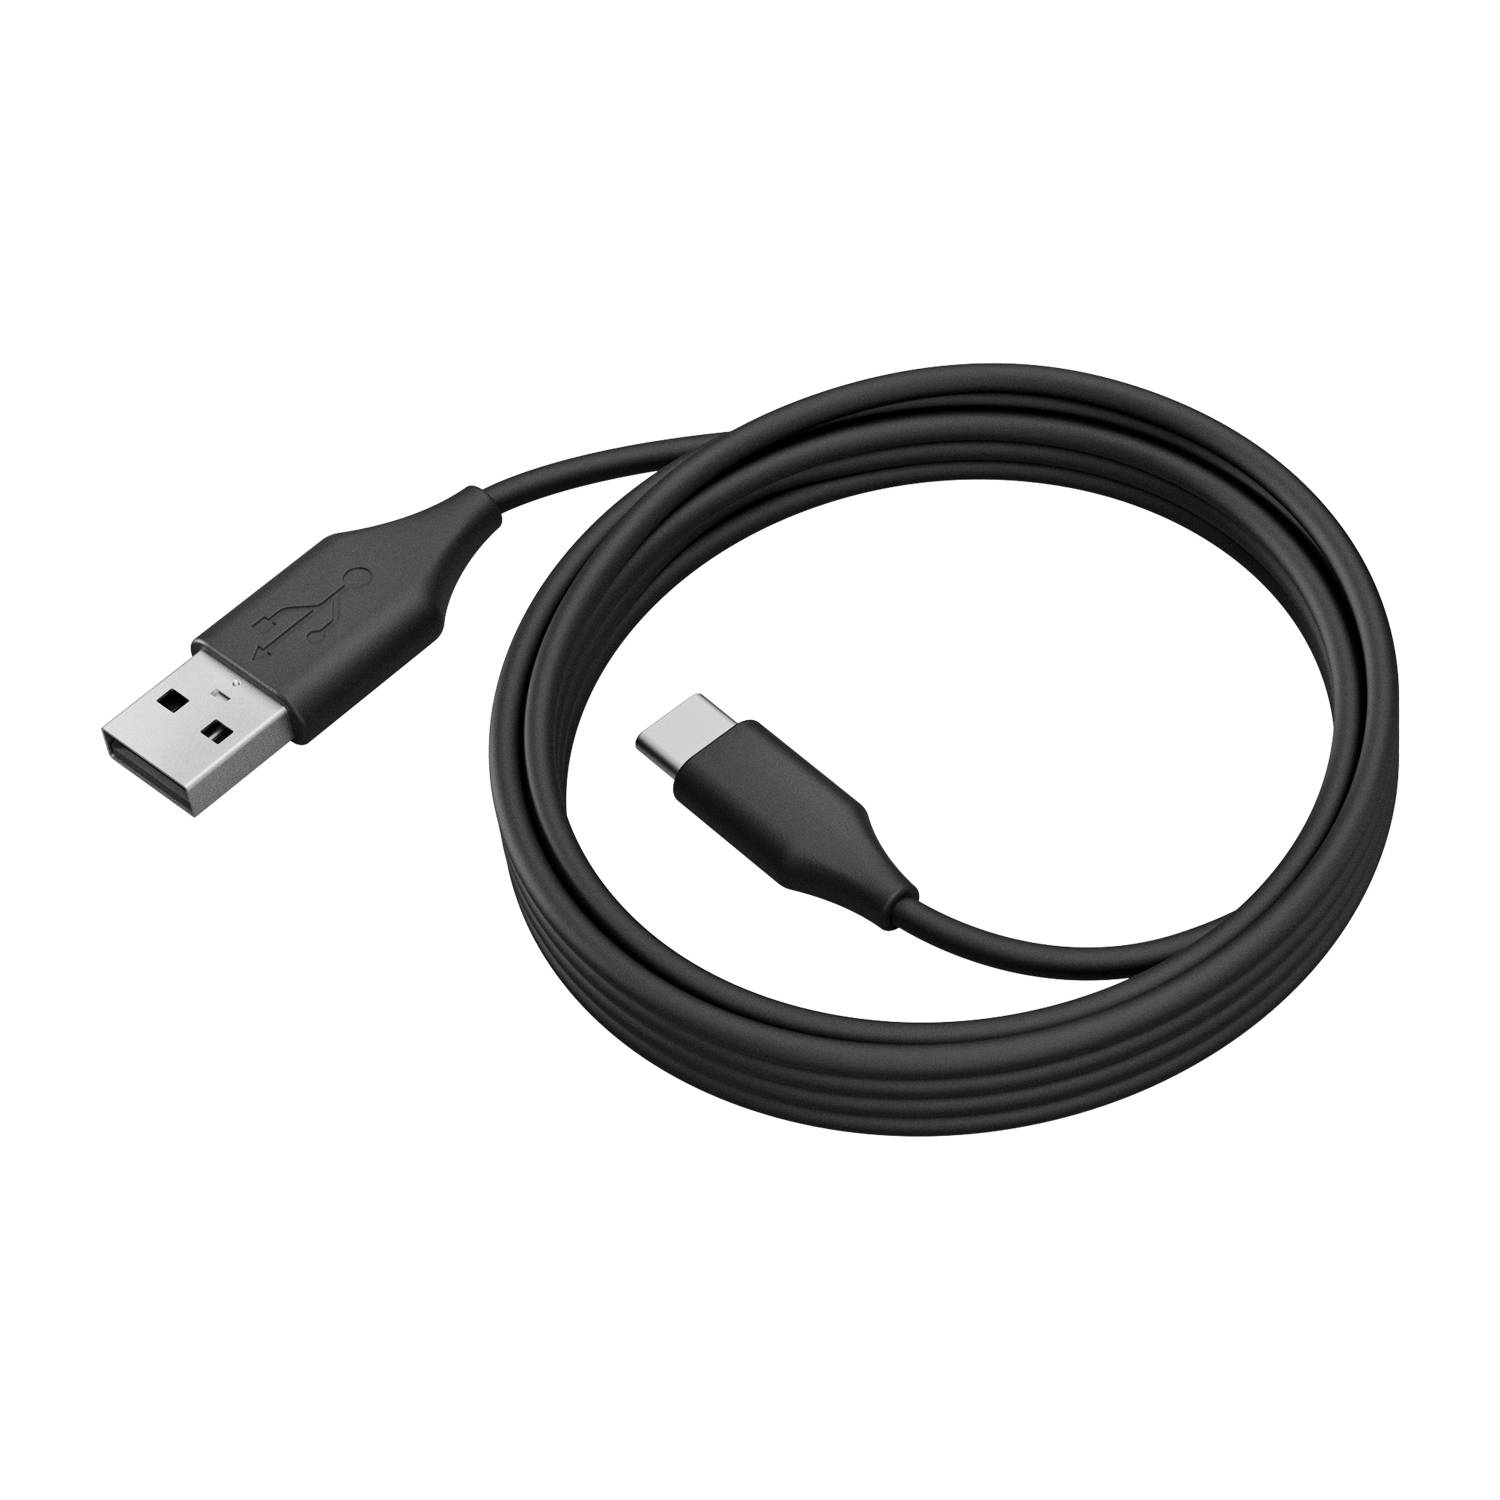 Rca Informatique - Image du produit : JABRA PANACAST 50 USB CABLE USB 3.0 2M USB-C TO USB-A